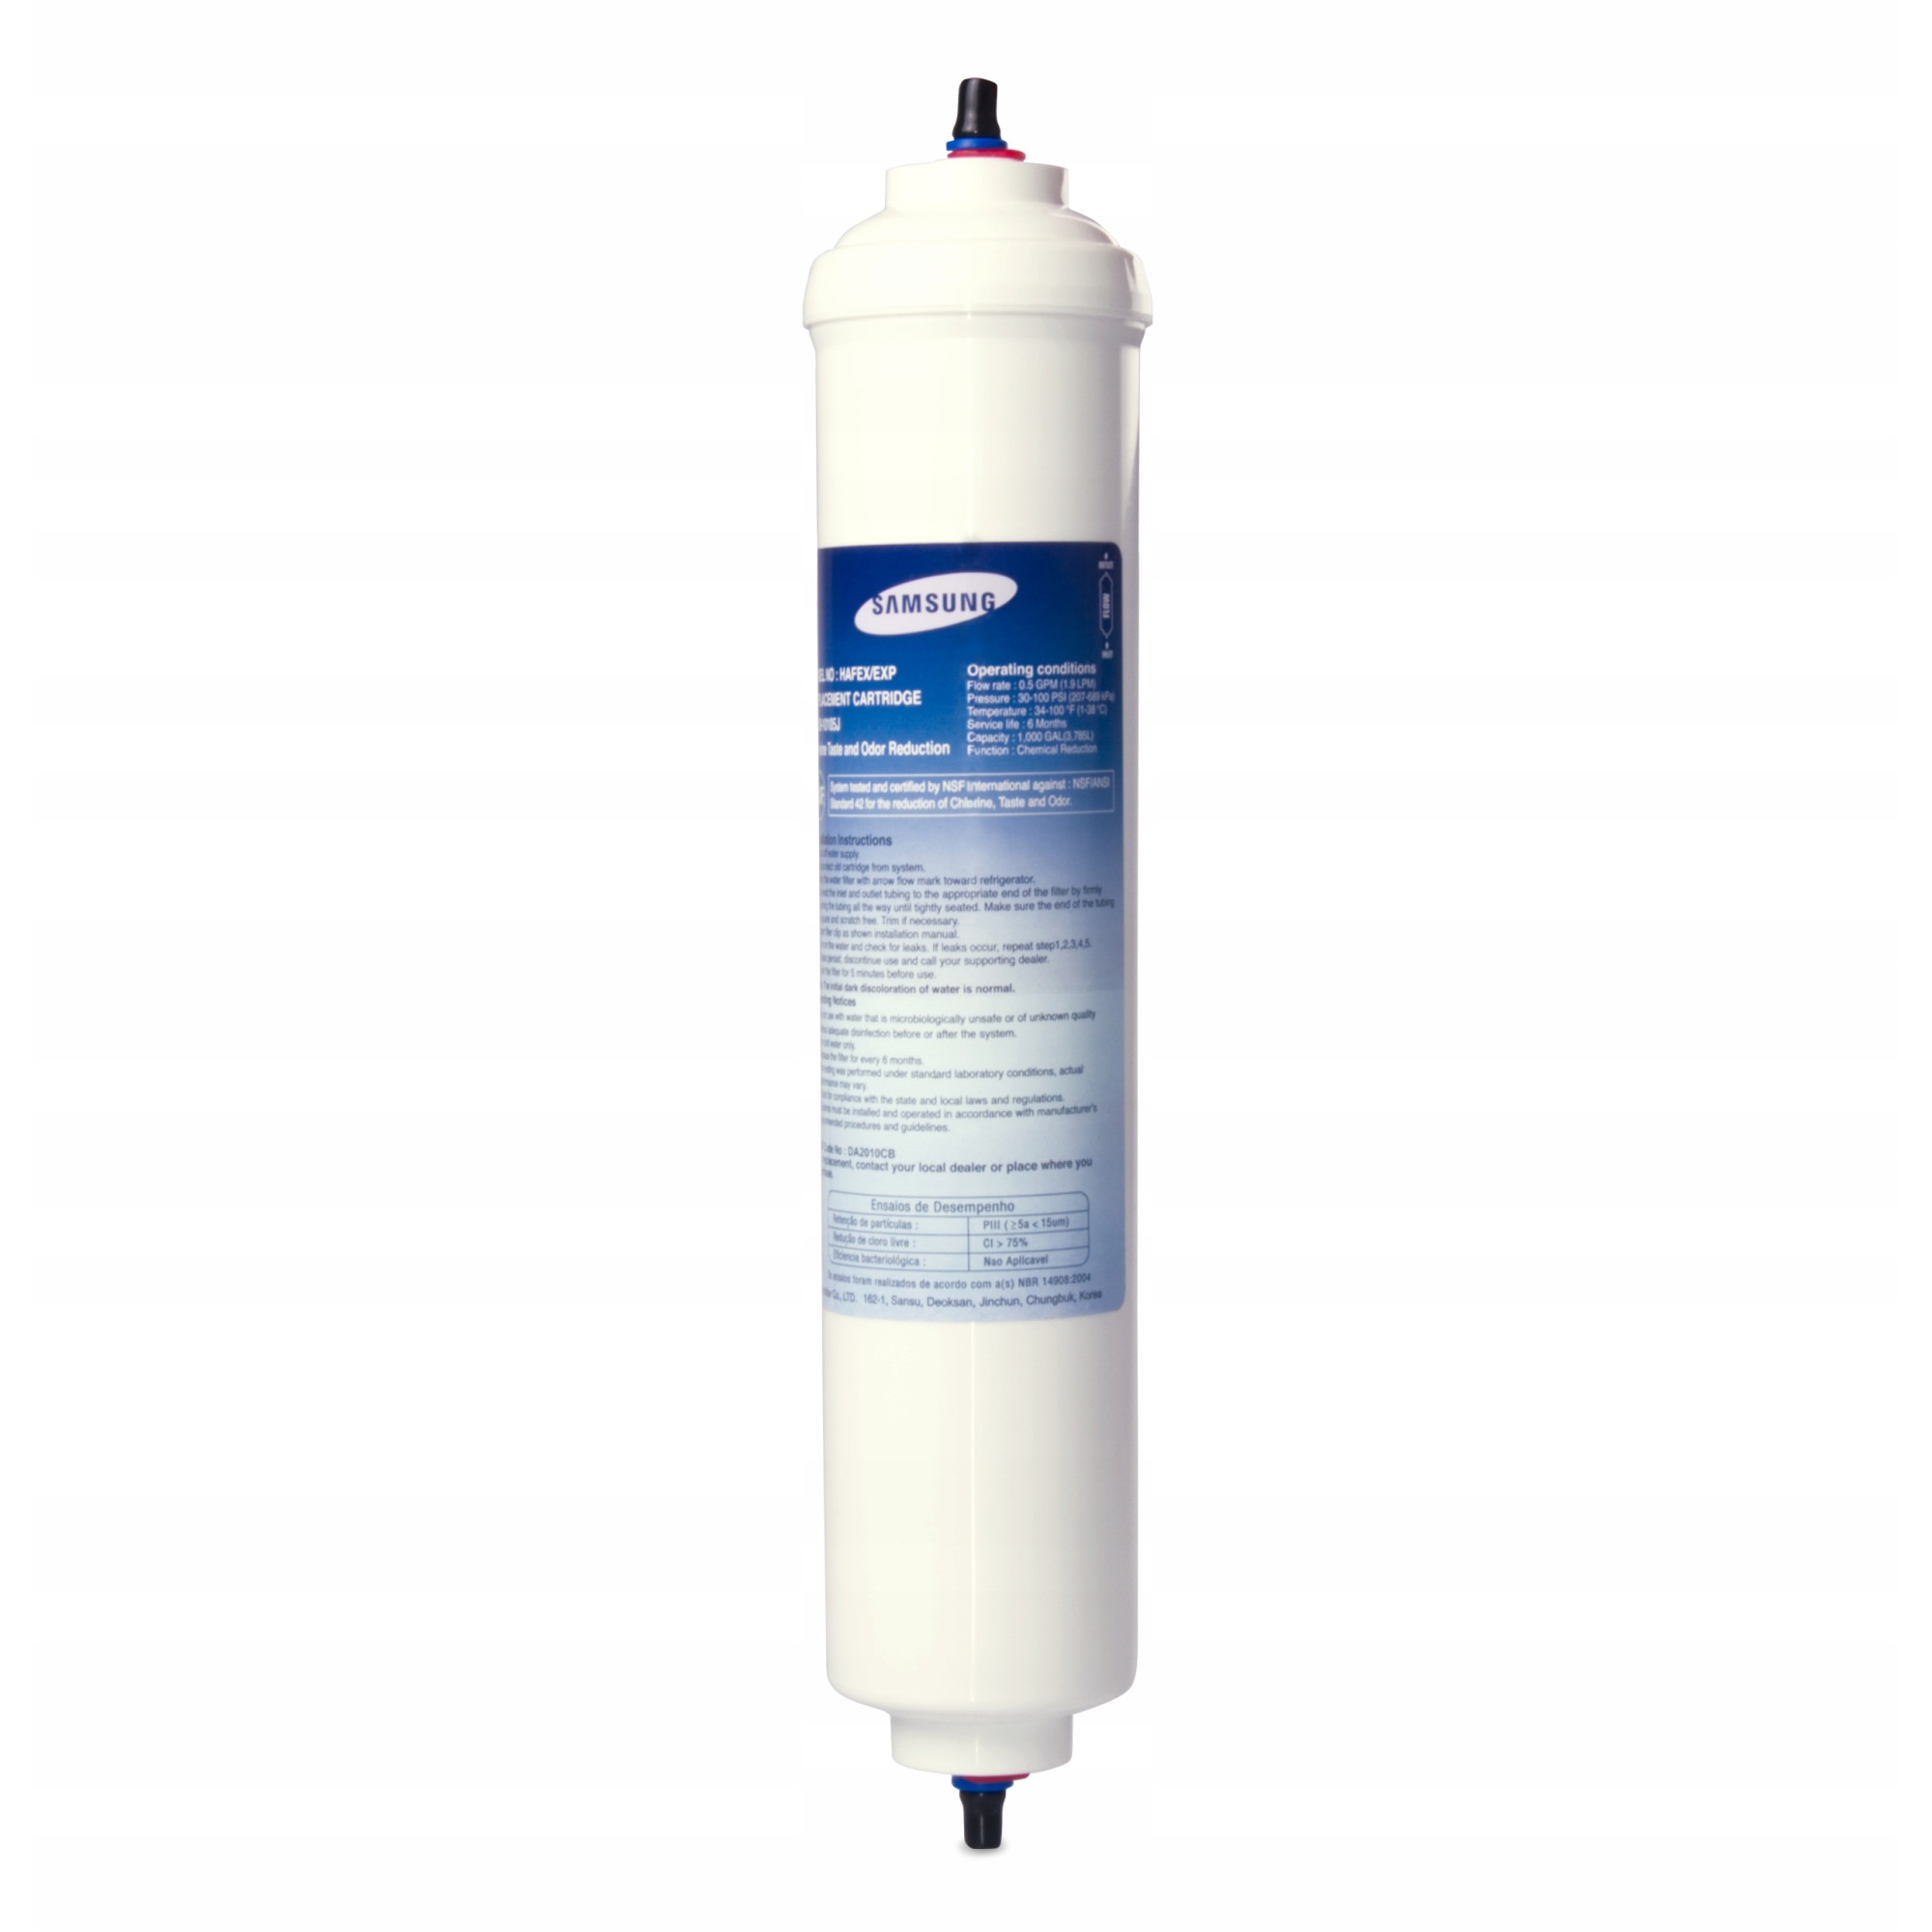 Filtre à eau Samsung DA29-10105J HAFEX/ Haier HRF - 628AF6, Haier